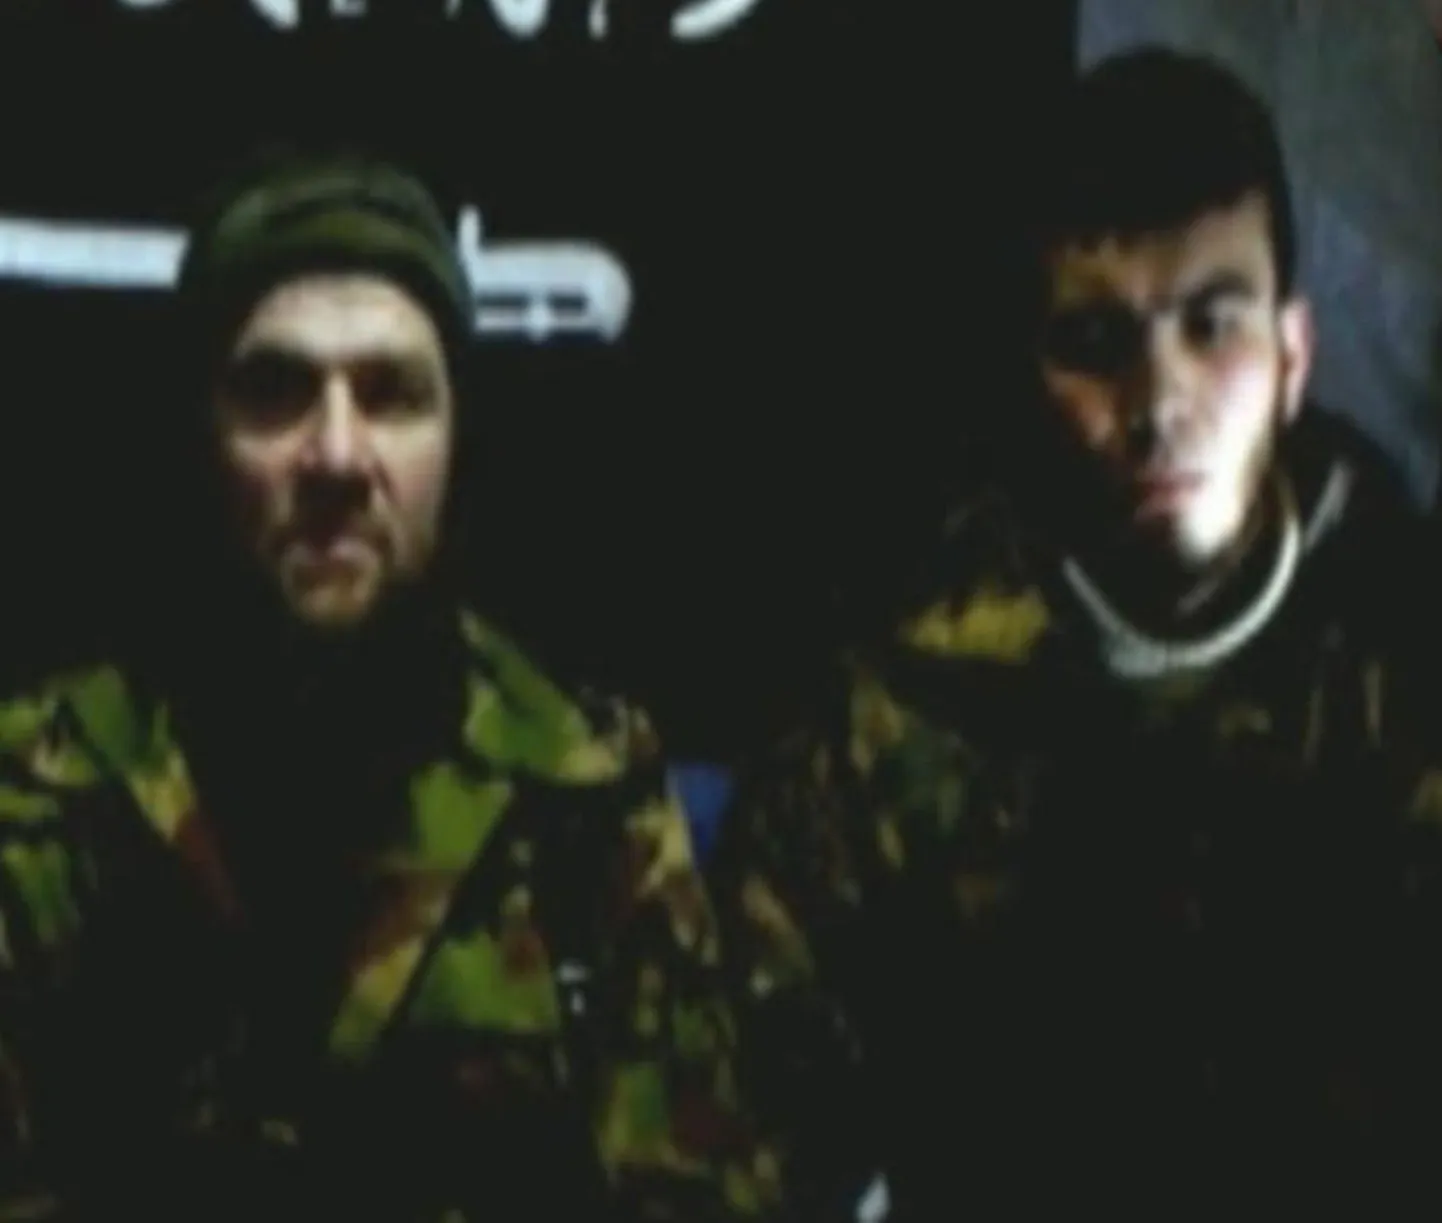 End Kaukaasia emiraadi liidriks Doku Umarov (vasakul)koos Magomed Jevlojeviga, kes on arvatav Domodedovo terrorirünnaku läbiviia.